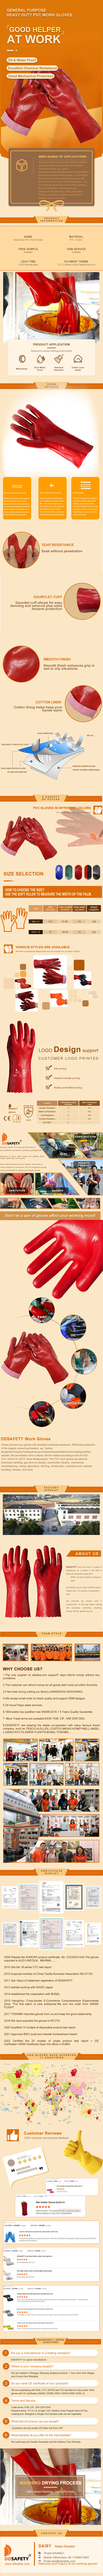 Rubber Hand Gloves - DPV507 Rubber Hand Gloves - DPV507 gloves,Rubber Hand Gloves,rubber gloves,Hand gloves